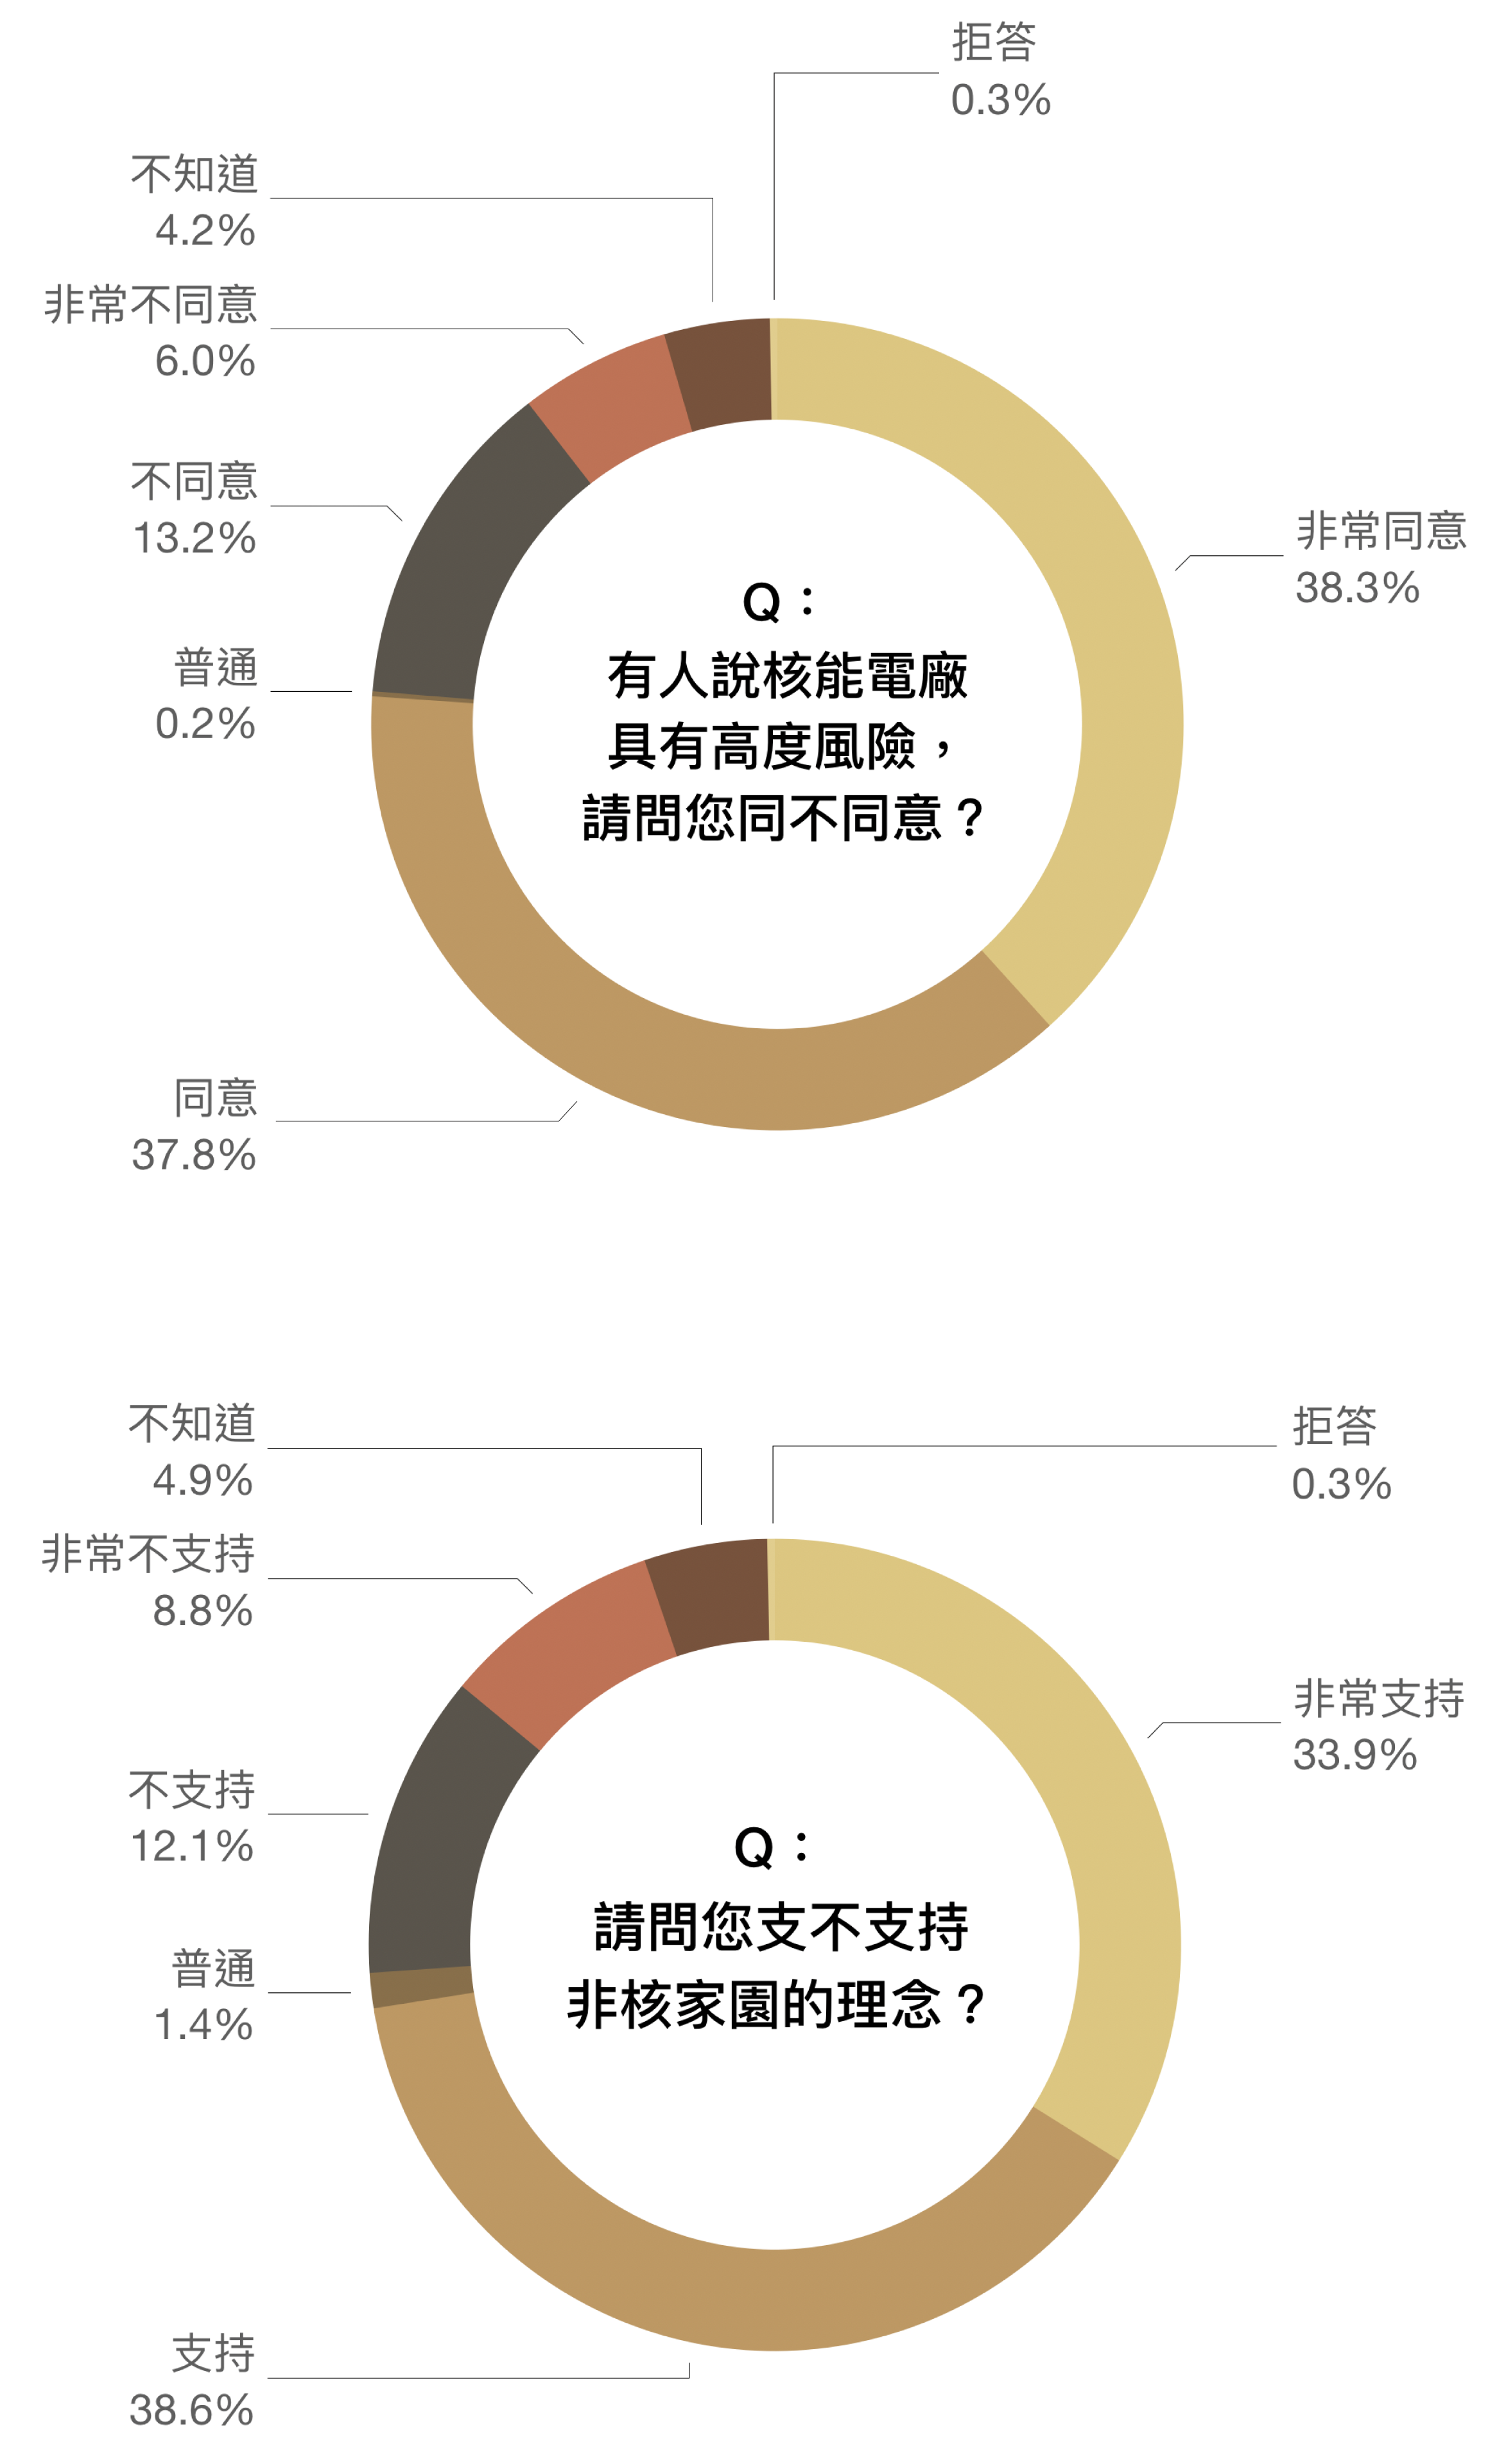 「隨手關燈 hen 好，能源稅再說？」從民調看台灣人節能減碳的知行落差